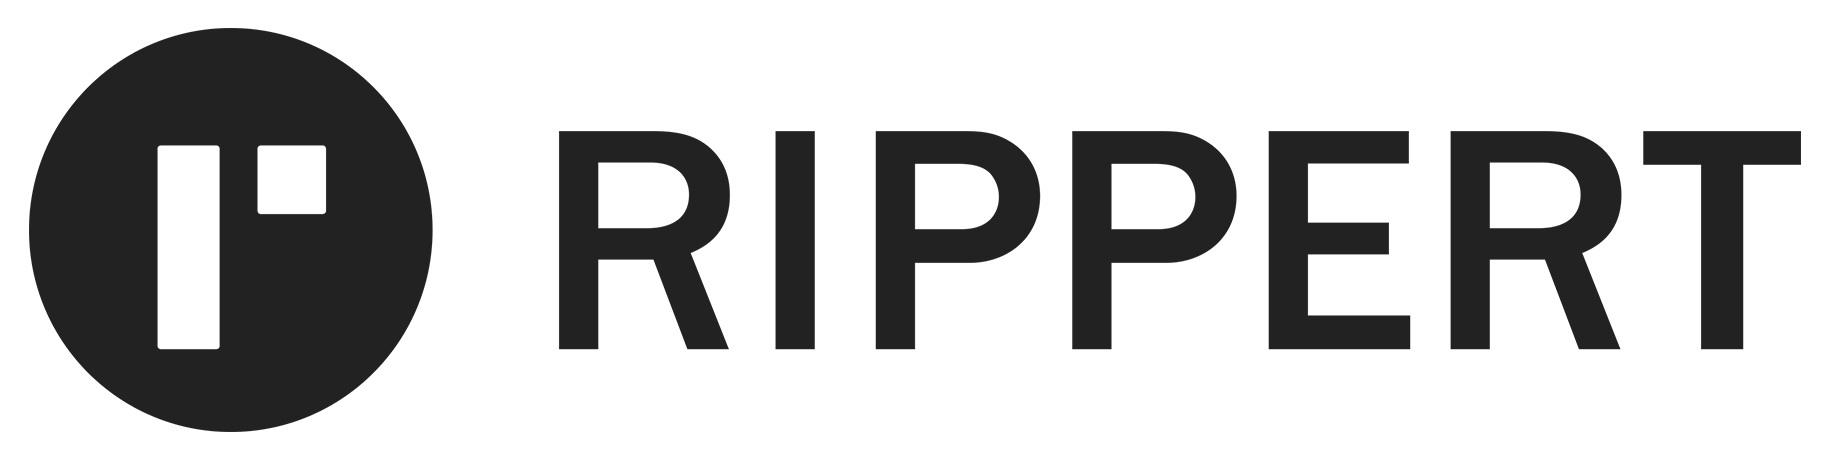 RIPPERT GmbH & Co. KG